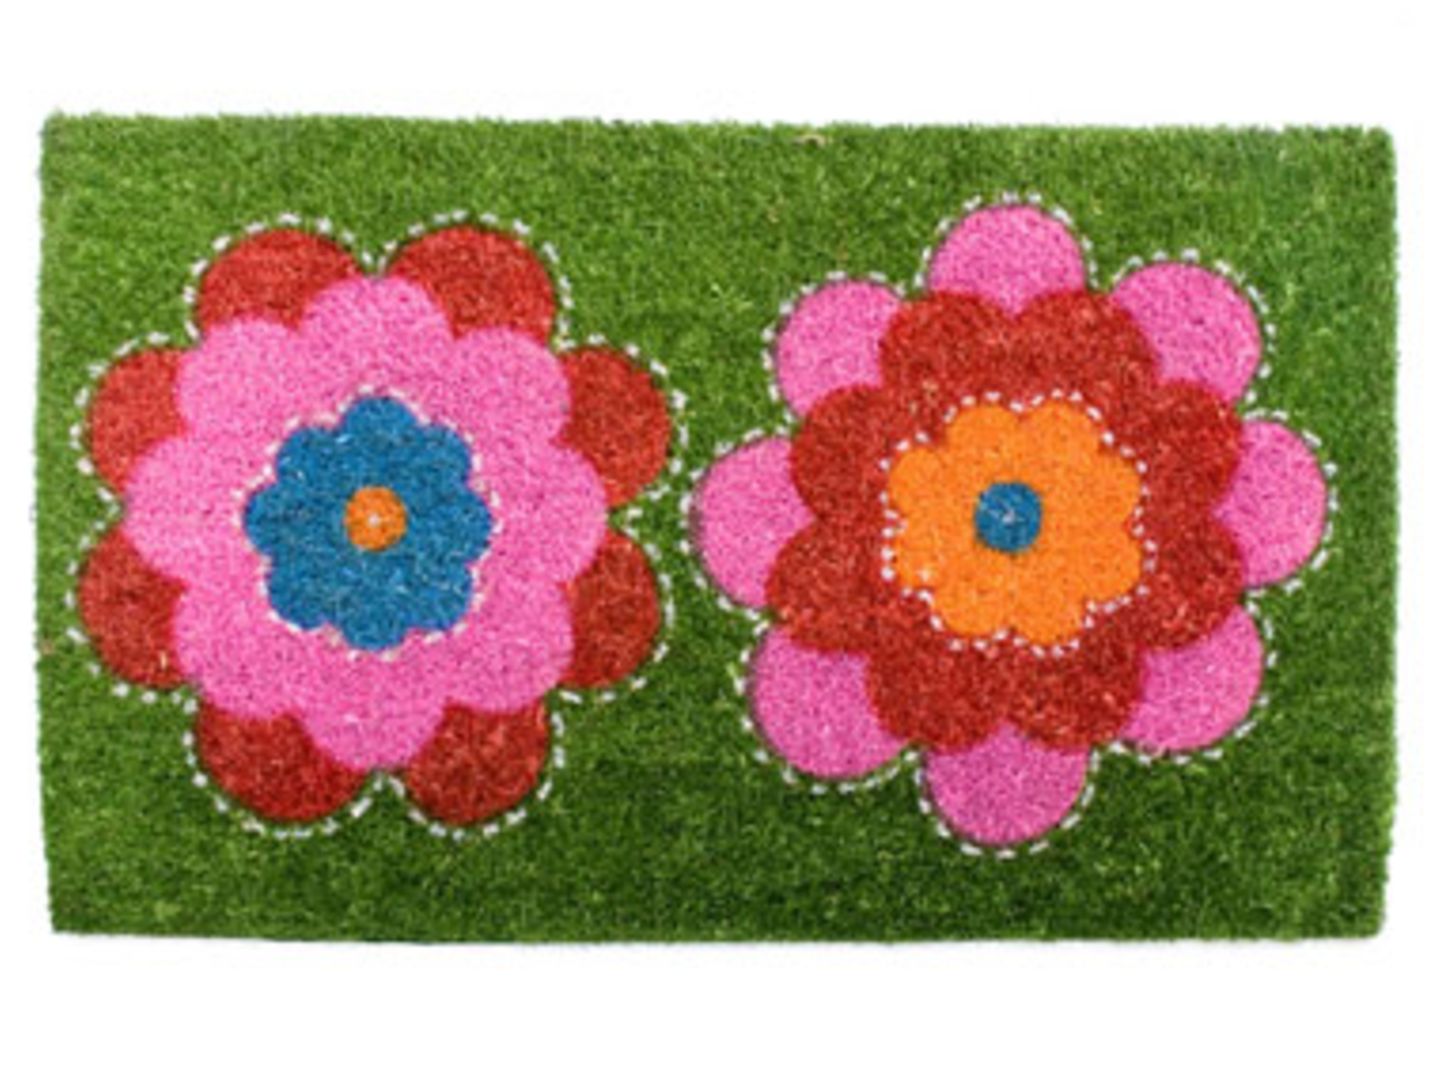 Flower Fußmatte aus Kokosfaser im Retro-Look. Mit Gummibelag, 24,95 Euro zzgl. Versandkosten, zu bestellen unter >> www.desaster.com.